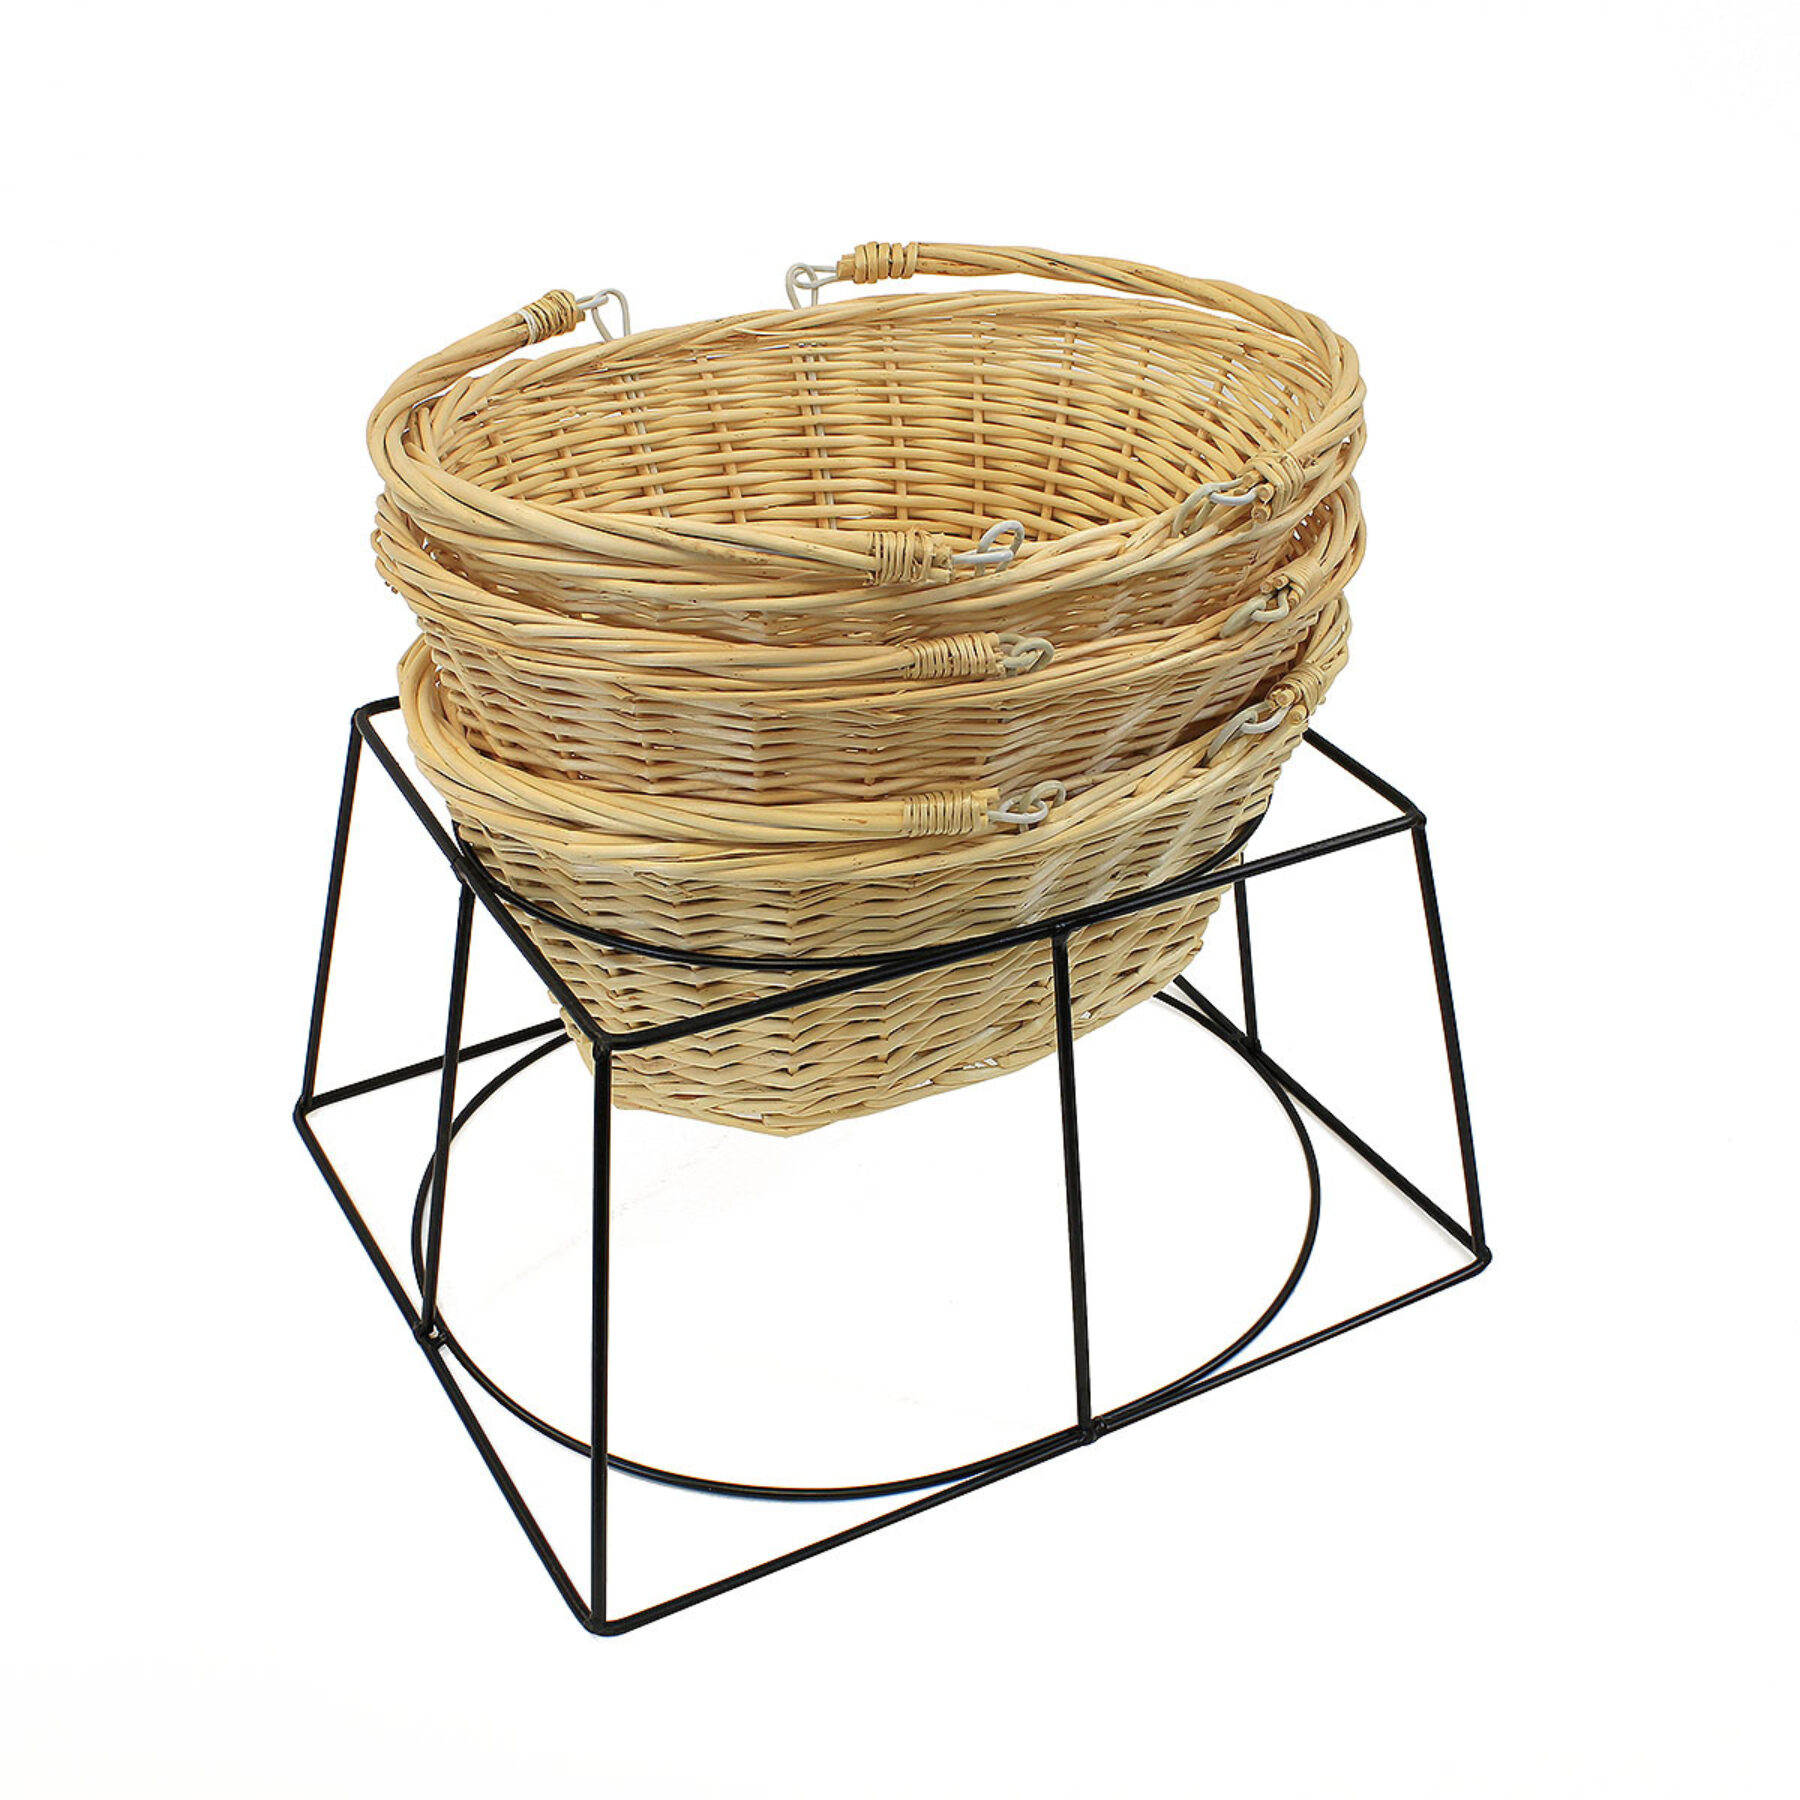 Metal Shopping Basket Stand